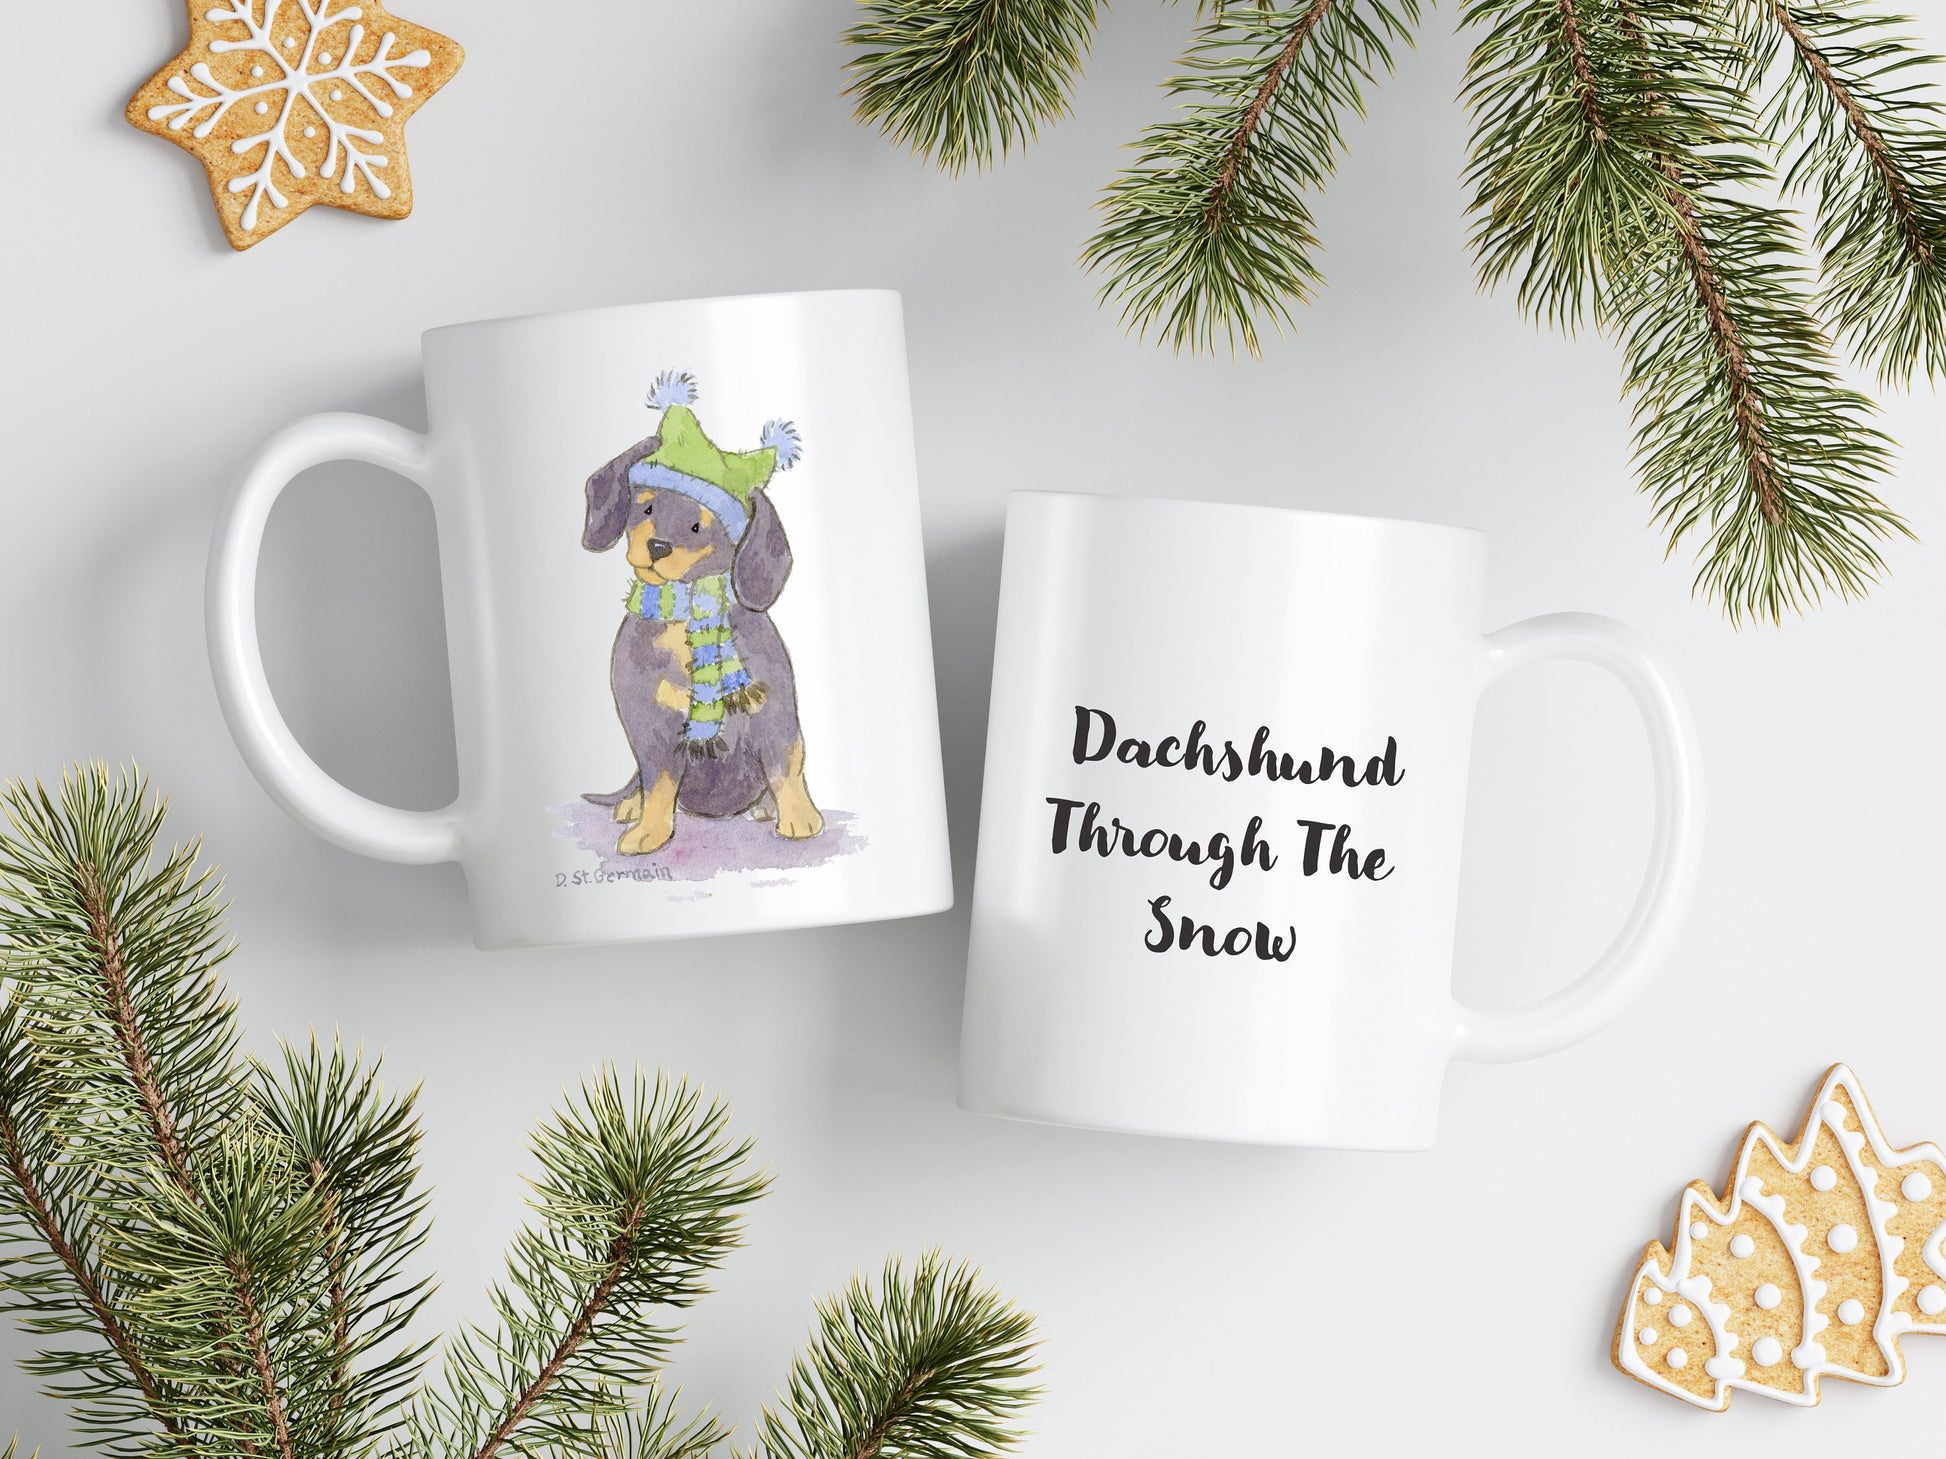 Holiday Dachshund Mug, Dachshund Gift, Weiner Dog Mug, Dachshund Lover Gift, Dog Mom Gift, Personalized Mug, Custom Dog Lover Gift